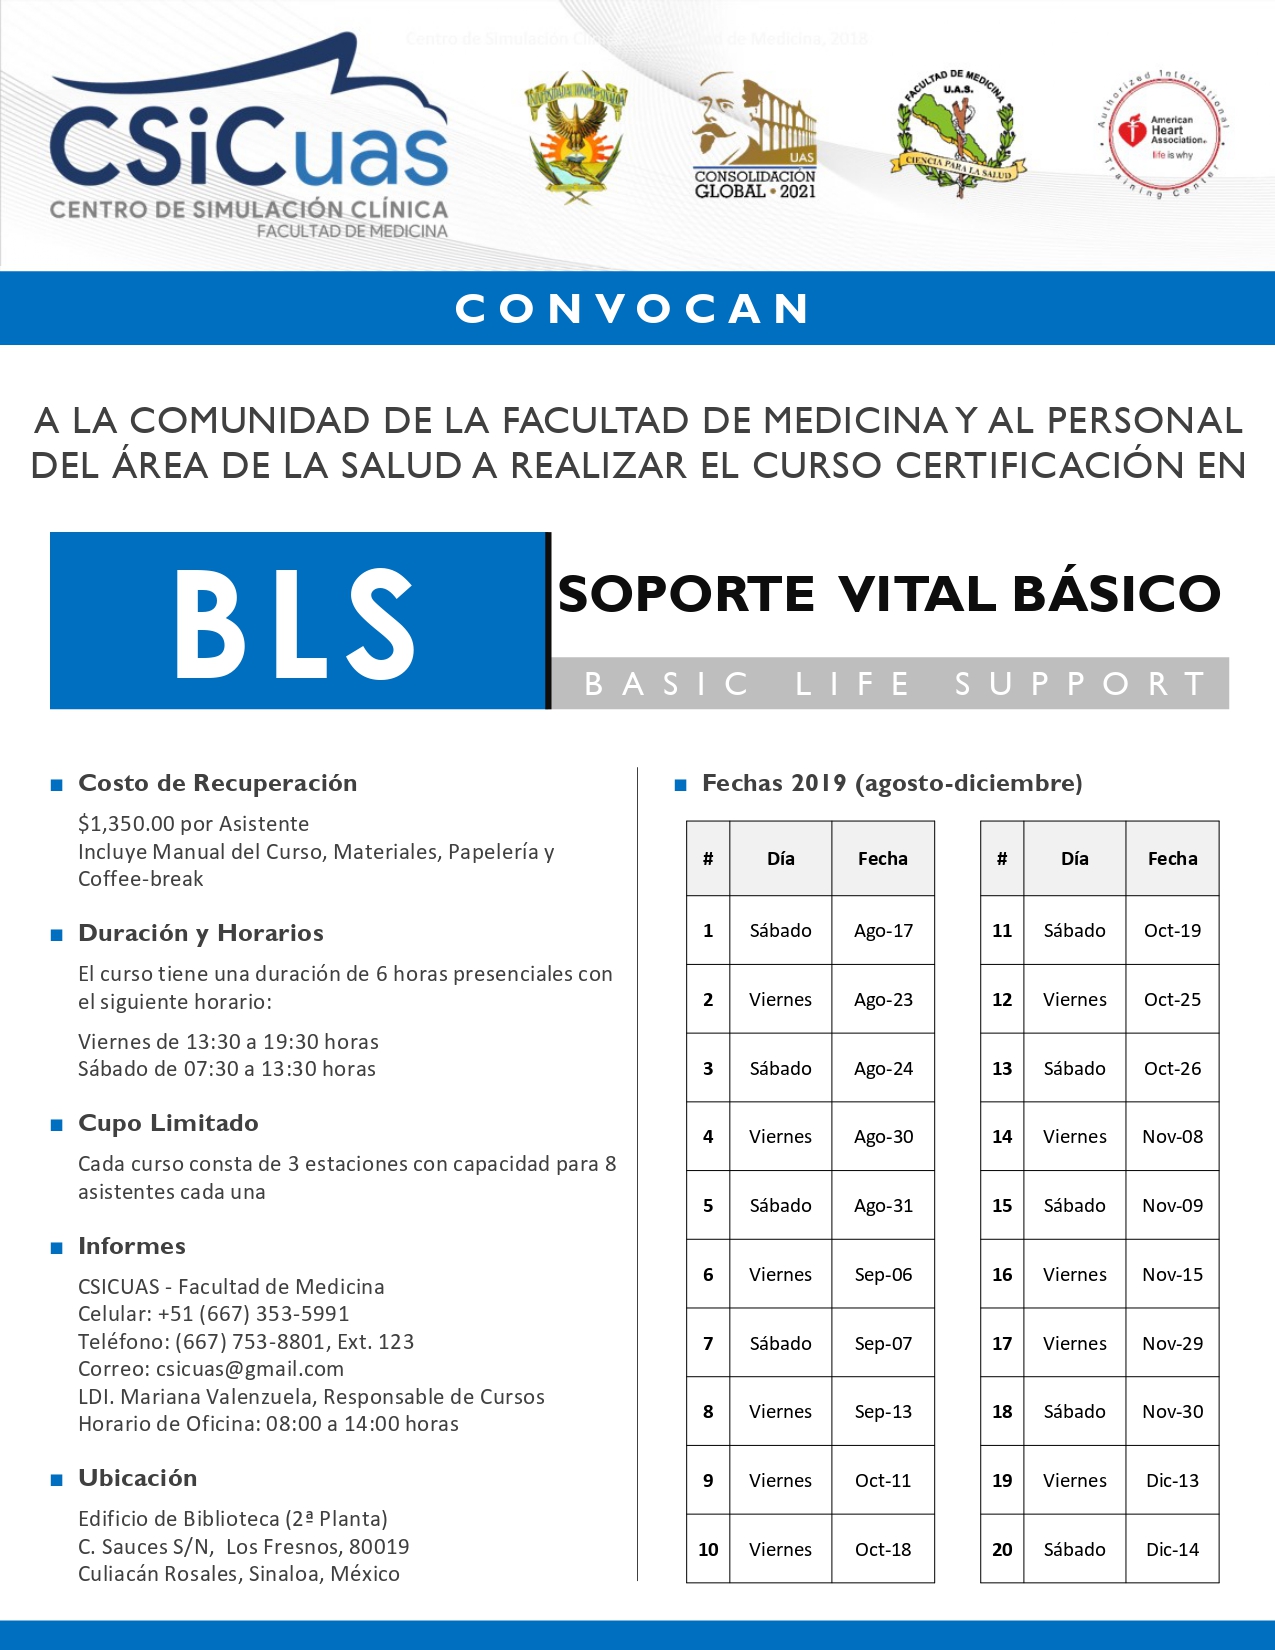 Curso Certificación en BLS (Basic Life Support) Soporte Vital Básico